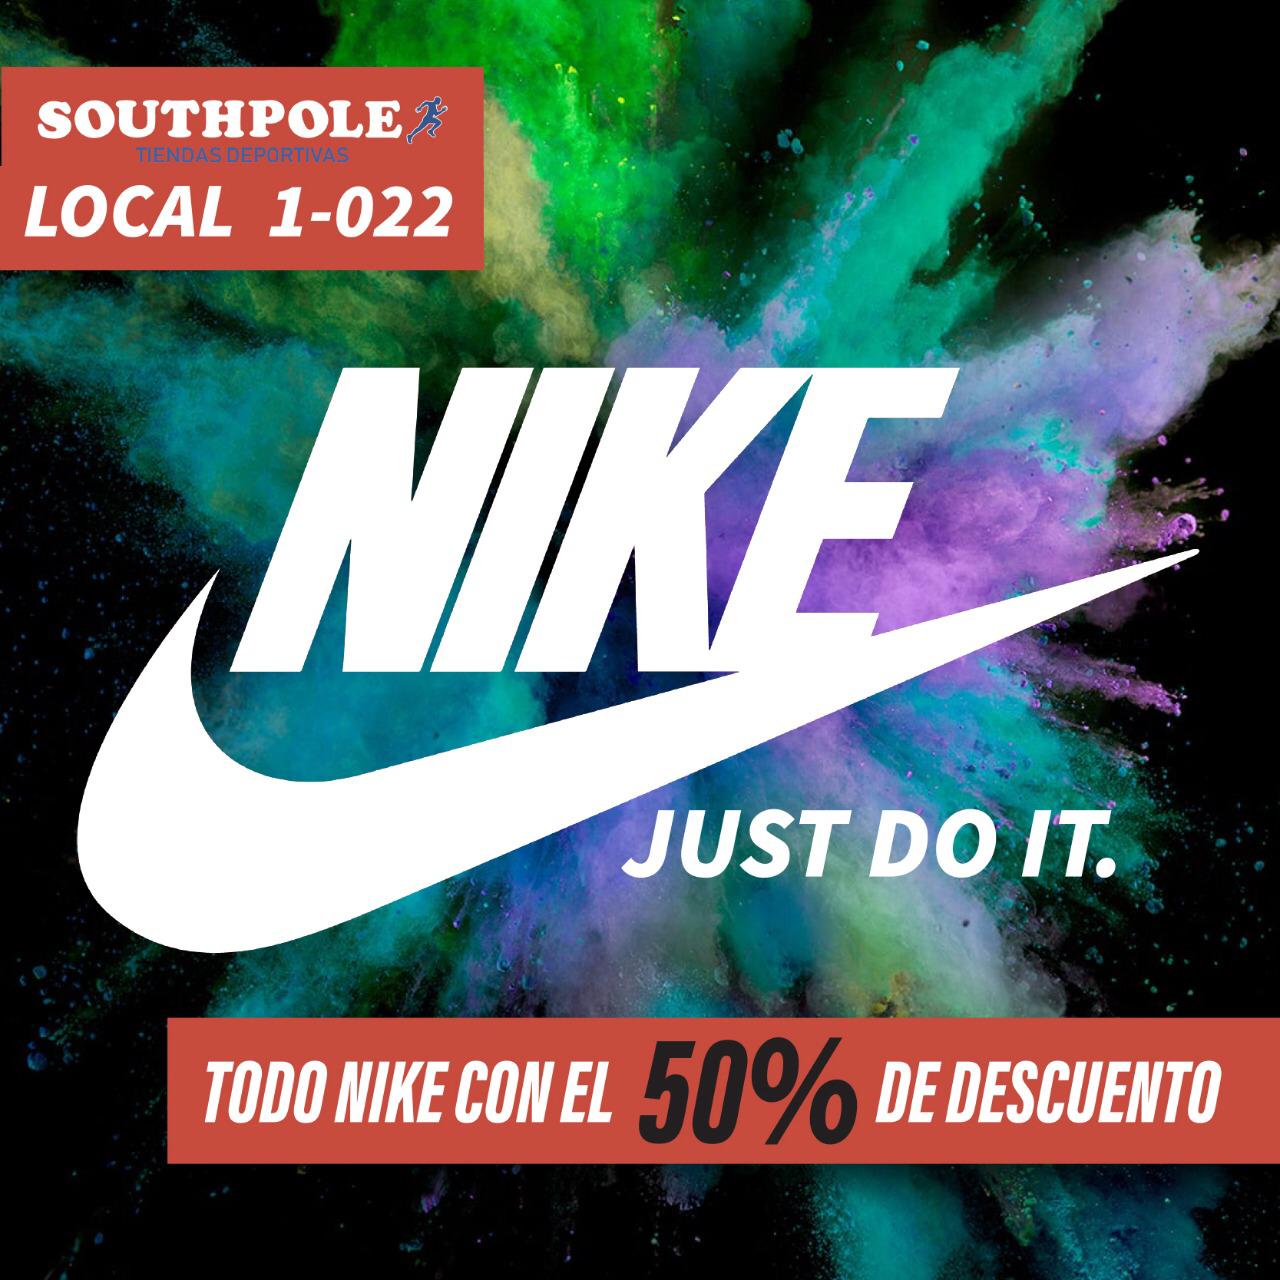 Twitter 上的 Unicentro Tunja："50% de descuento en Nike. Una promoción  irrepetible, sólo en Southpole Unicentro Tunja #Promociones #Nike #Moda  #Deporte #Gym #Tunja #Boyacá https://t.co/YIuw48dTFQ" / Twitter